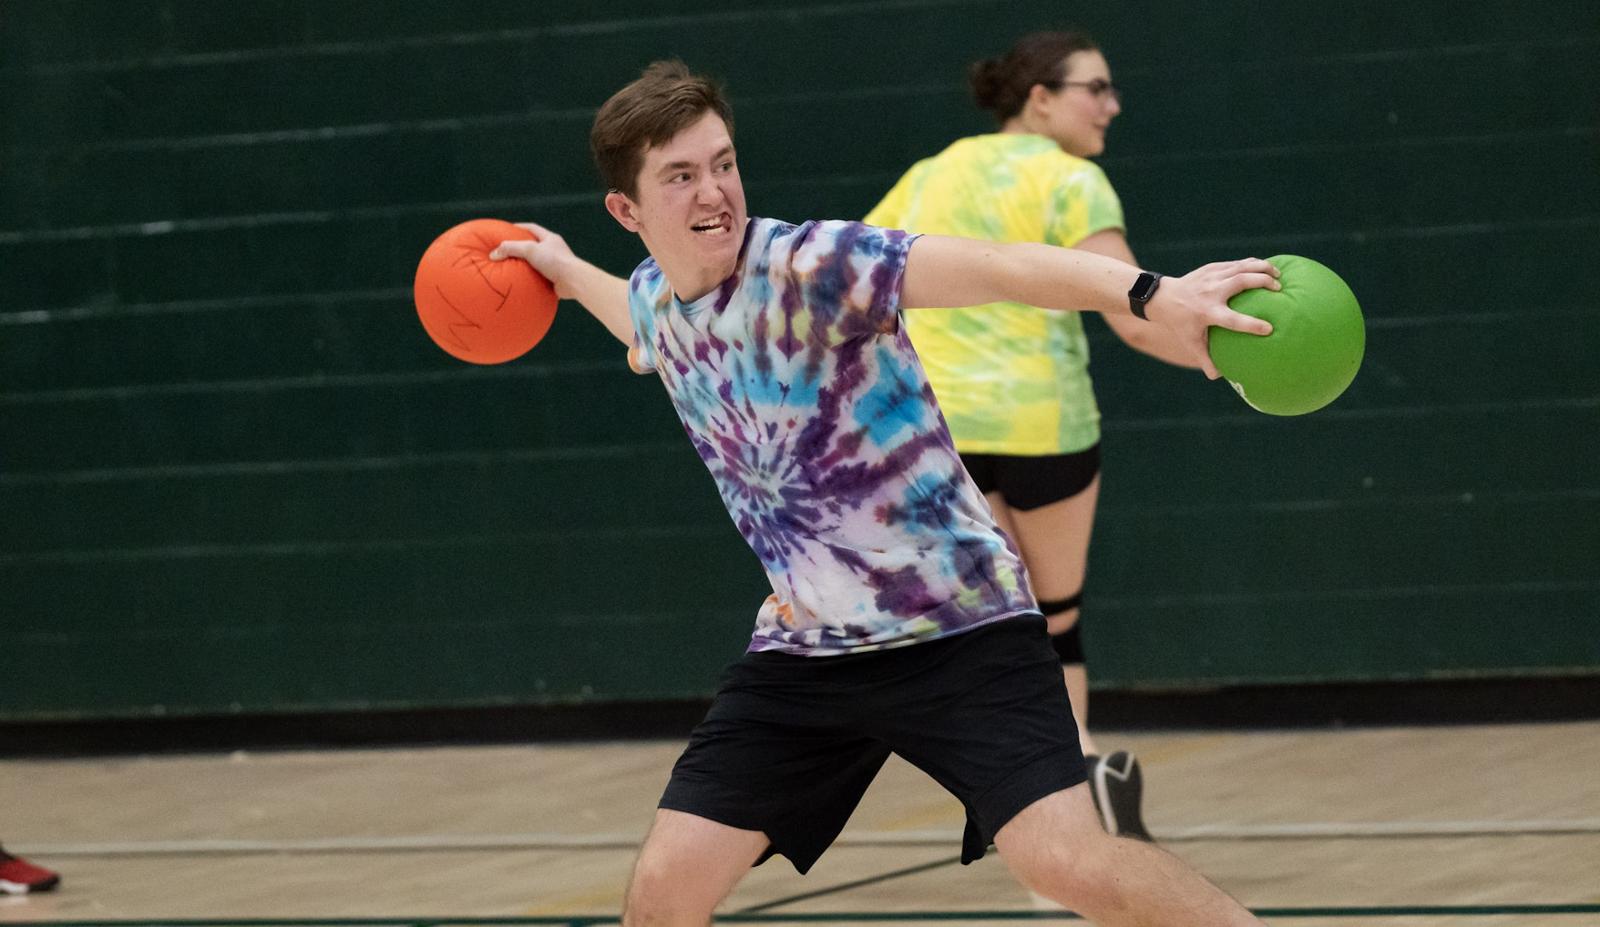 Intense guy throwing dodgeballs